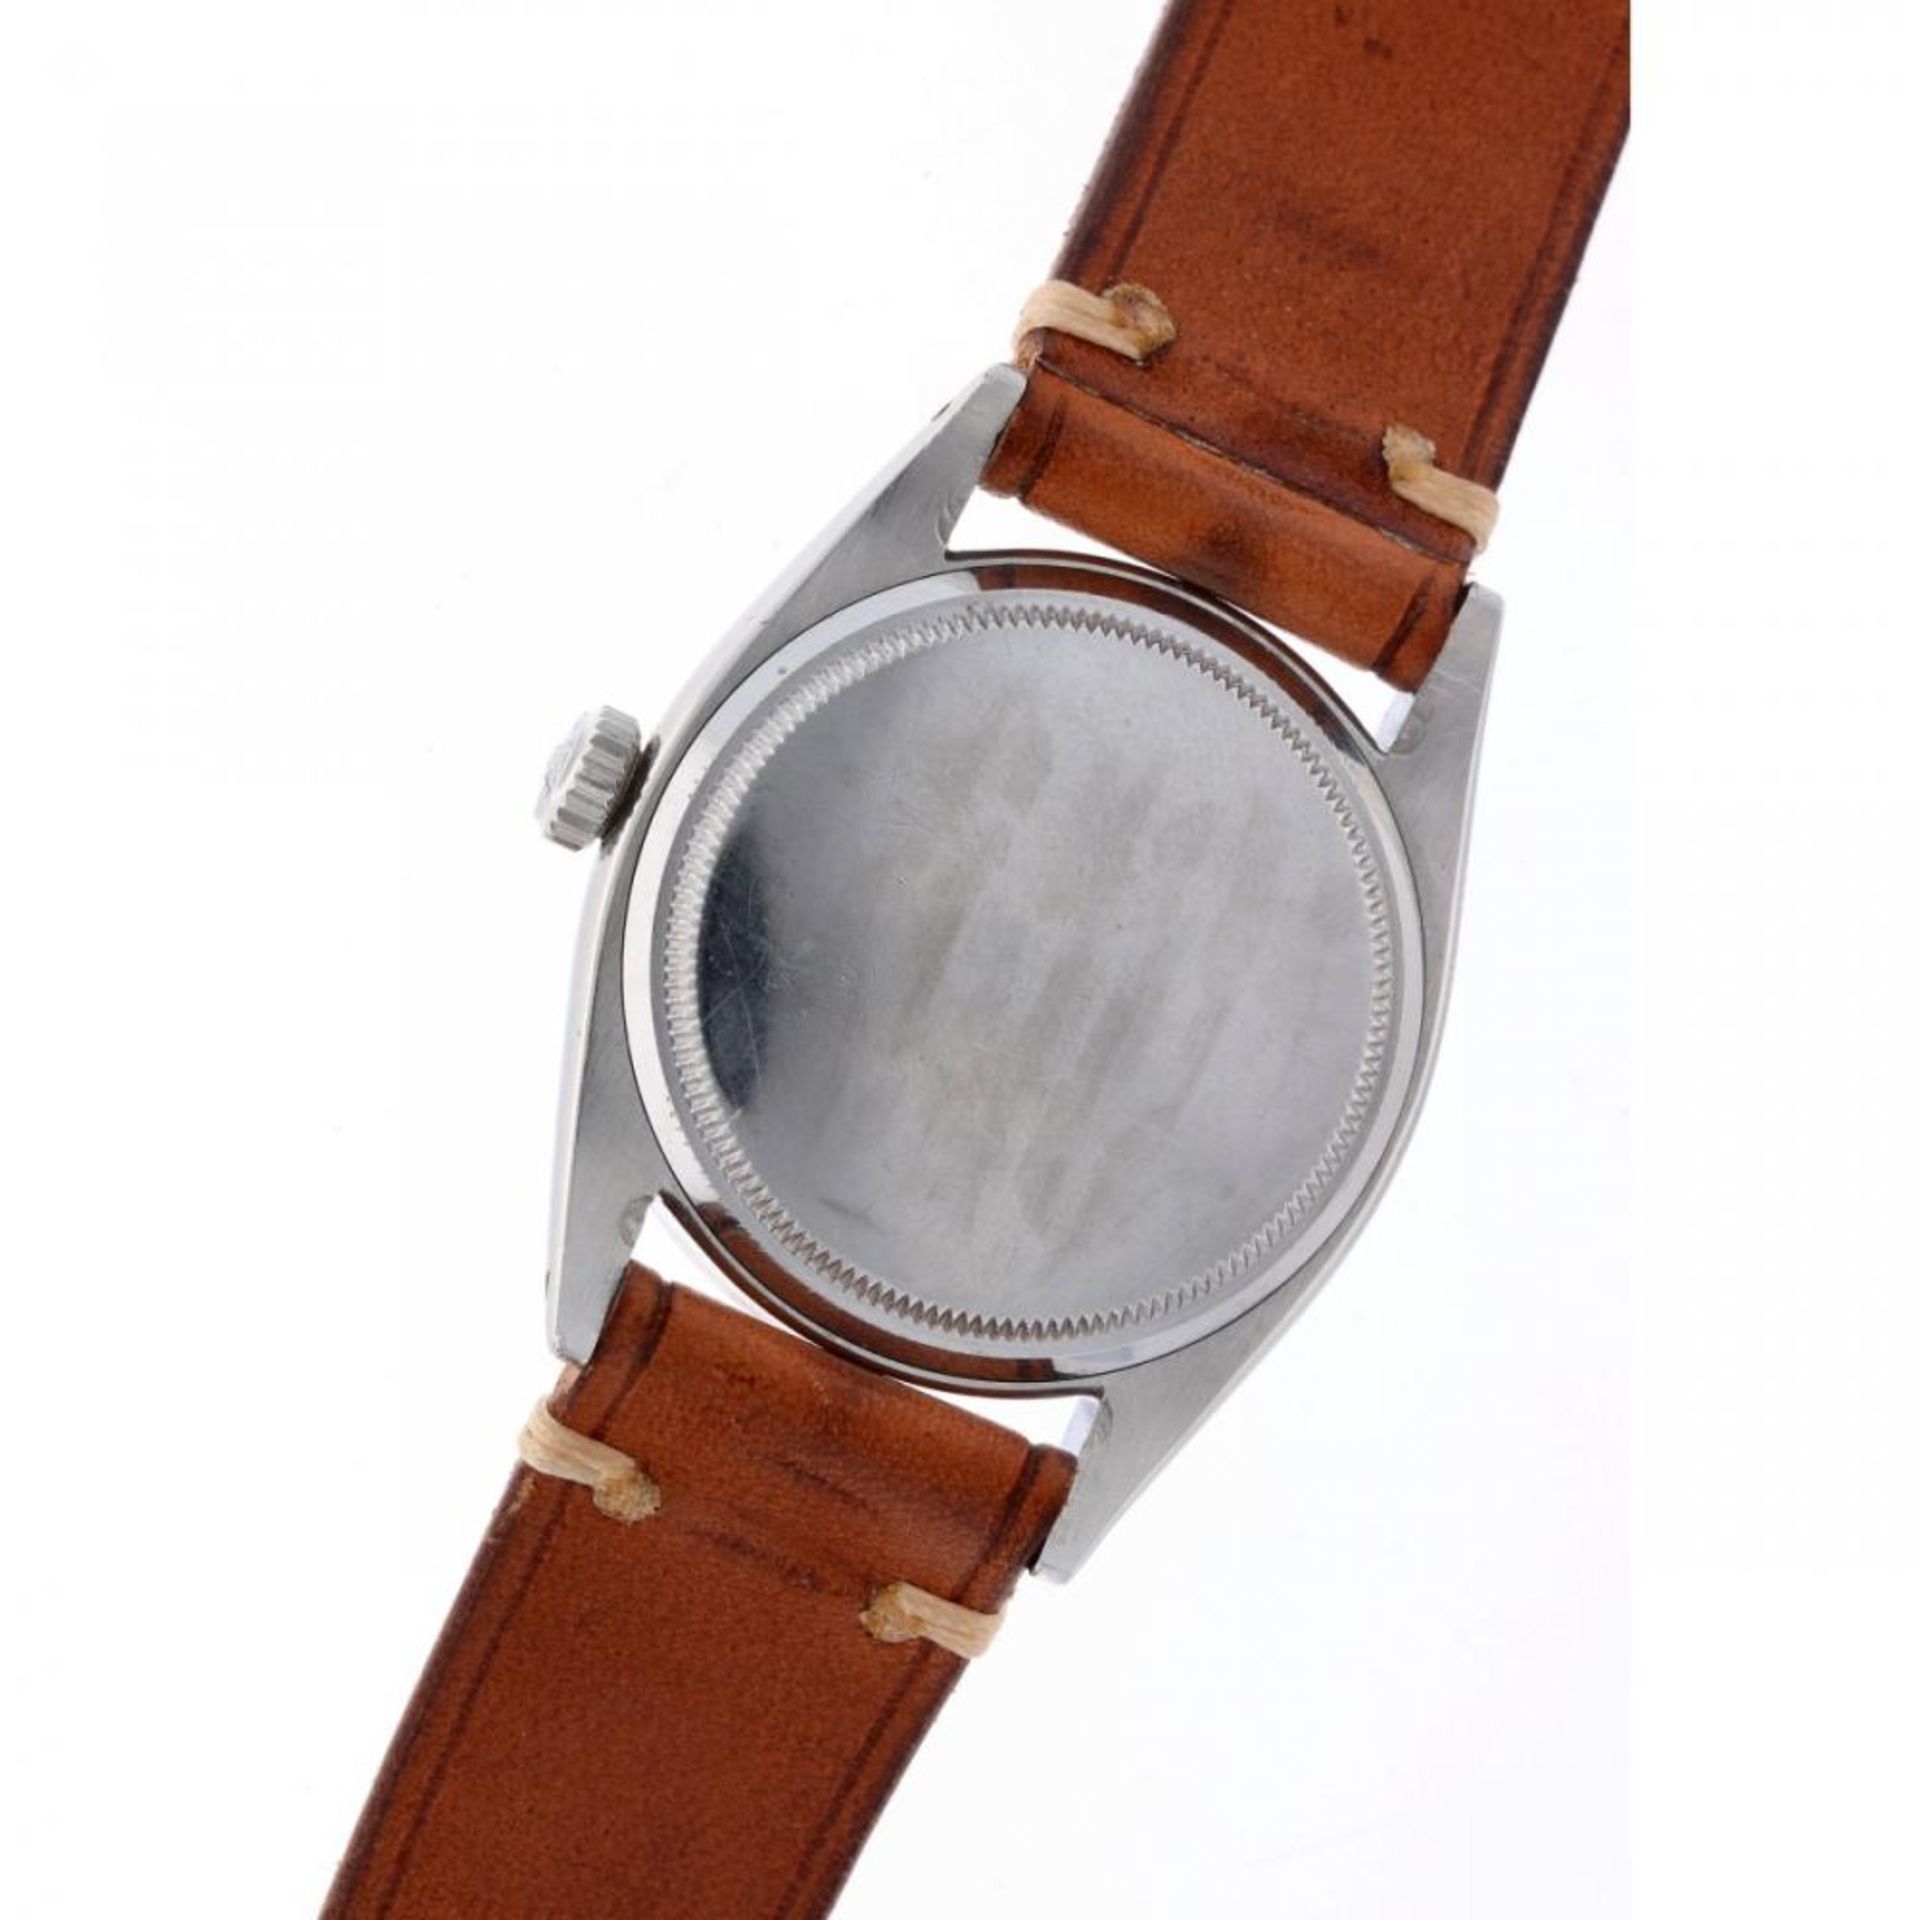 Rolex Explorer Red Depth Rating 6610 - Men's watch - 1956. - Image 7 of 10